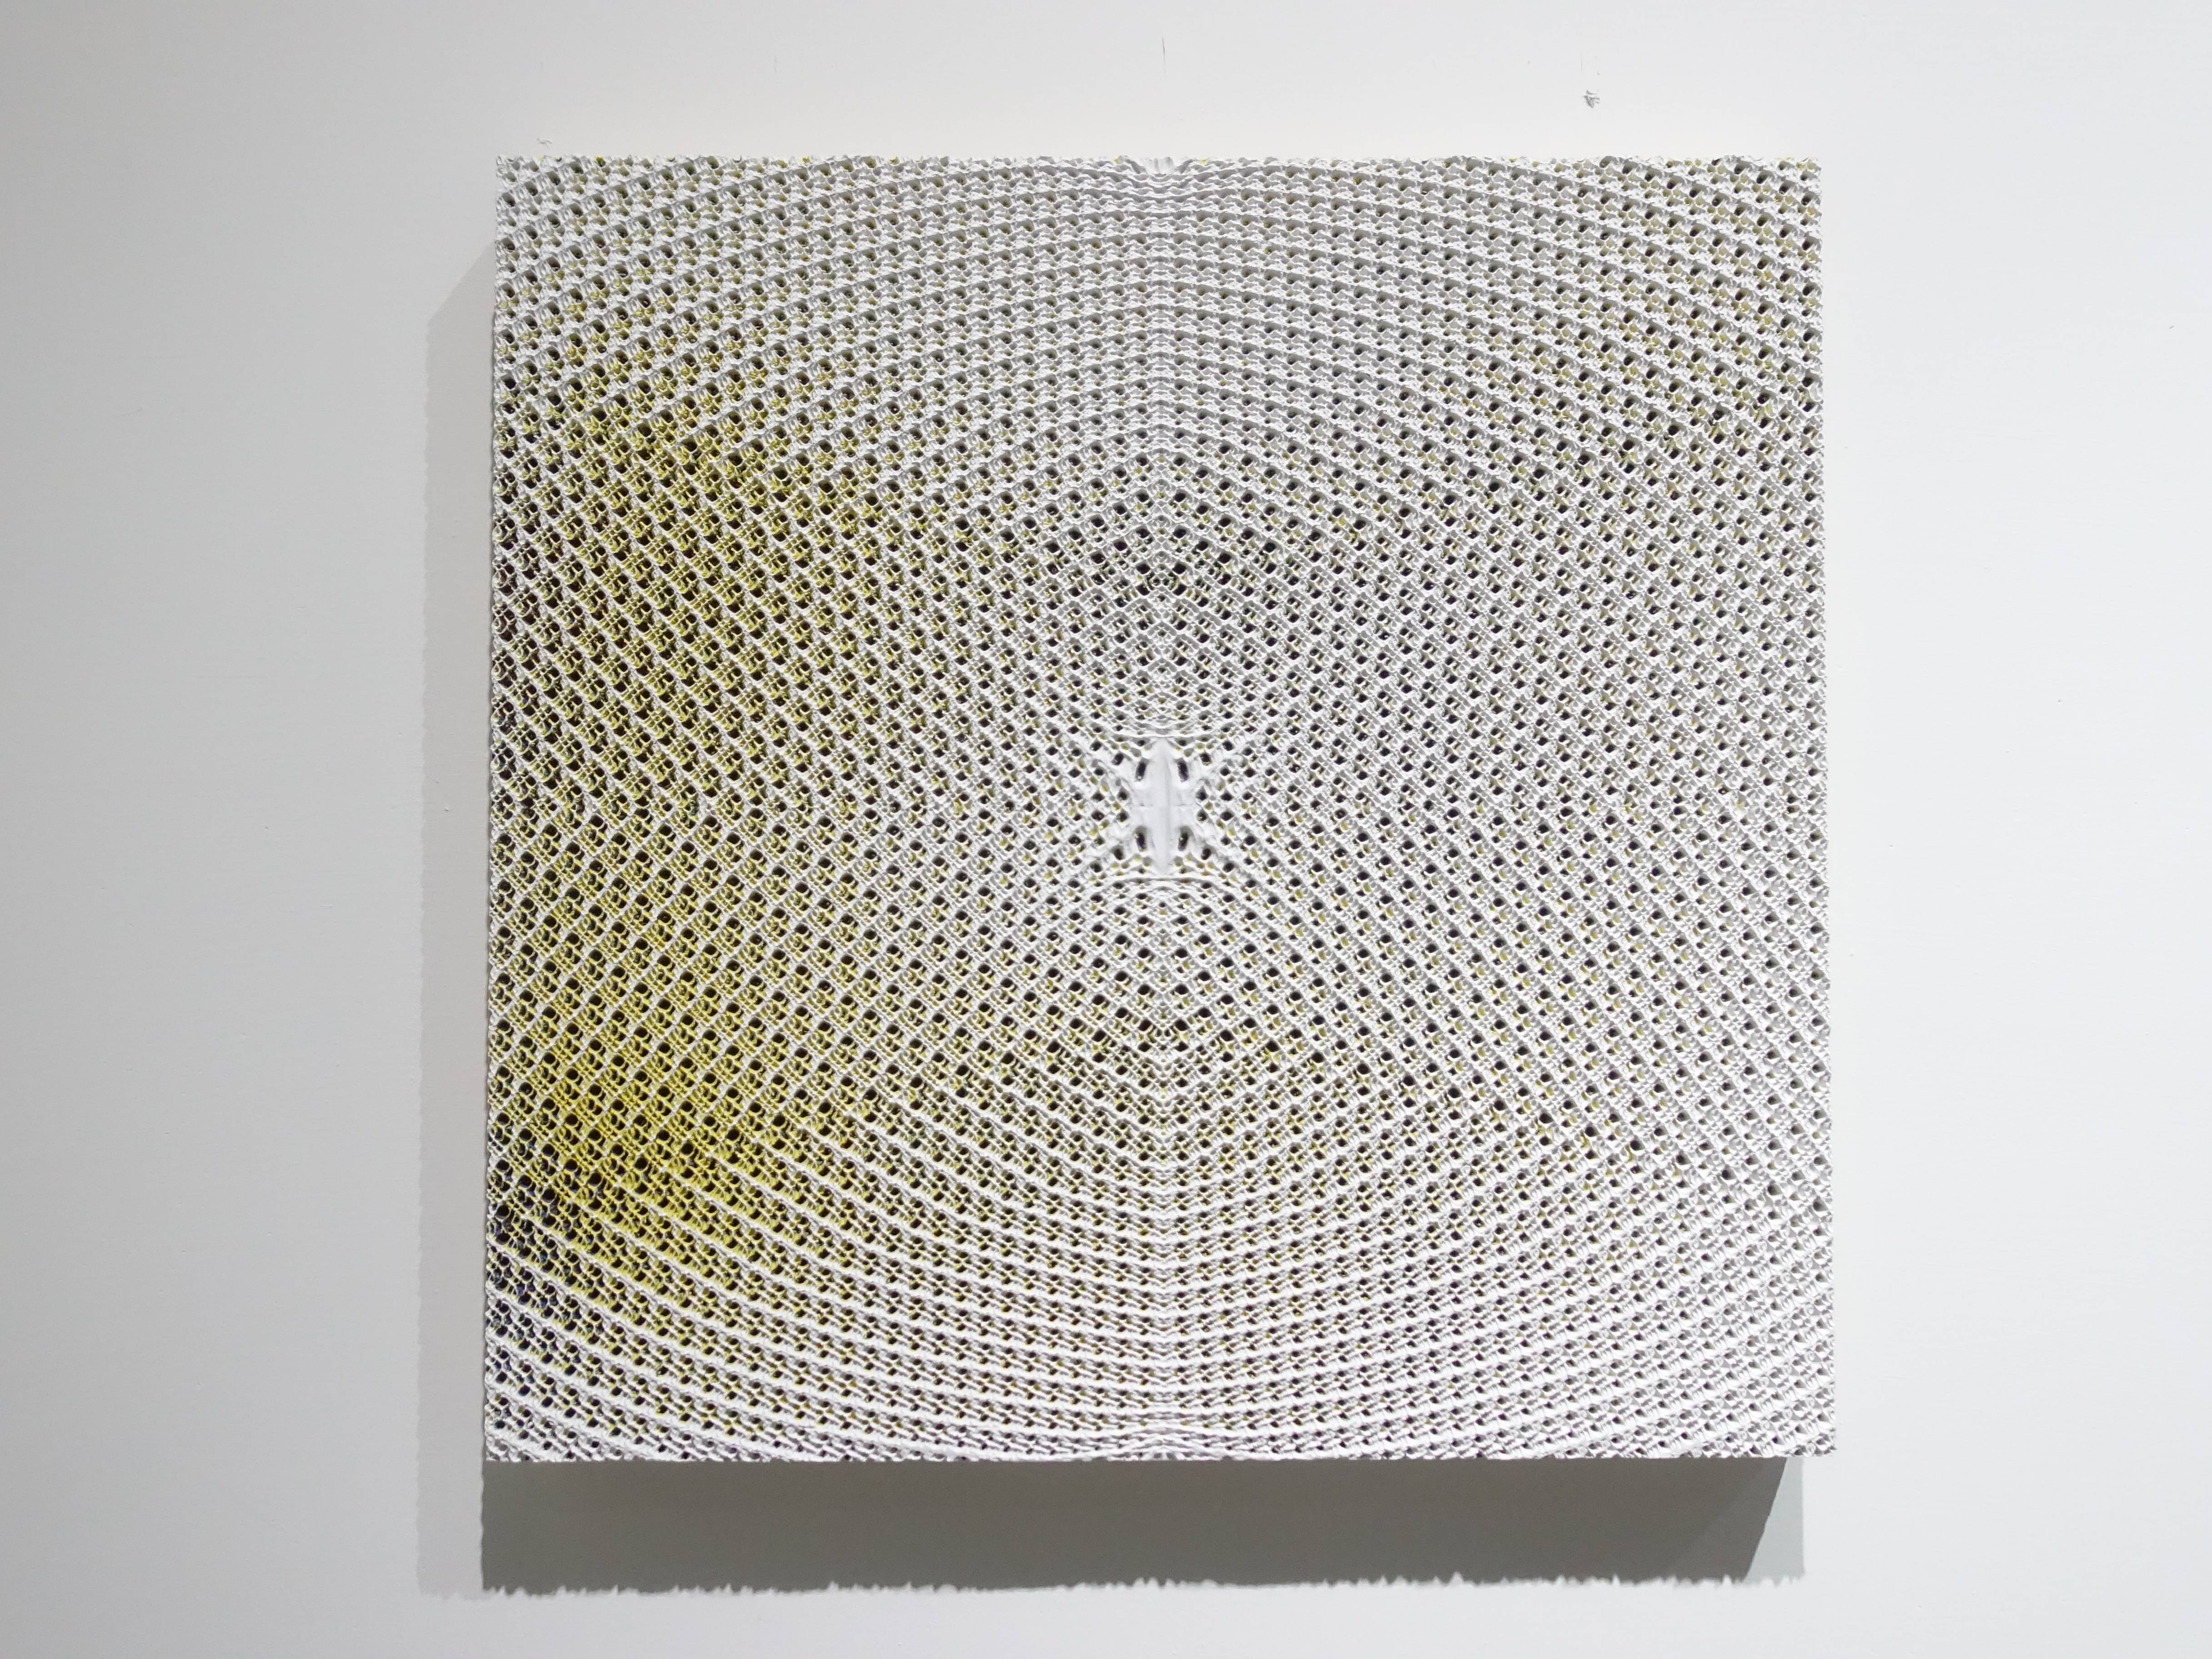 歐勁，《無題-153》，30 x 31 cm，木板、丙烯、綜合材料，2019。